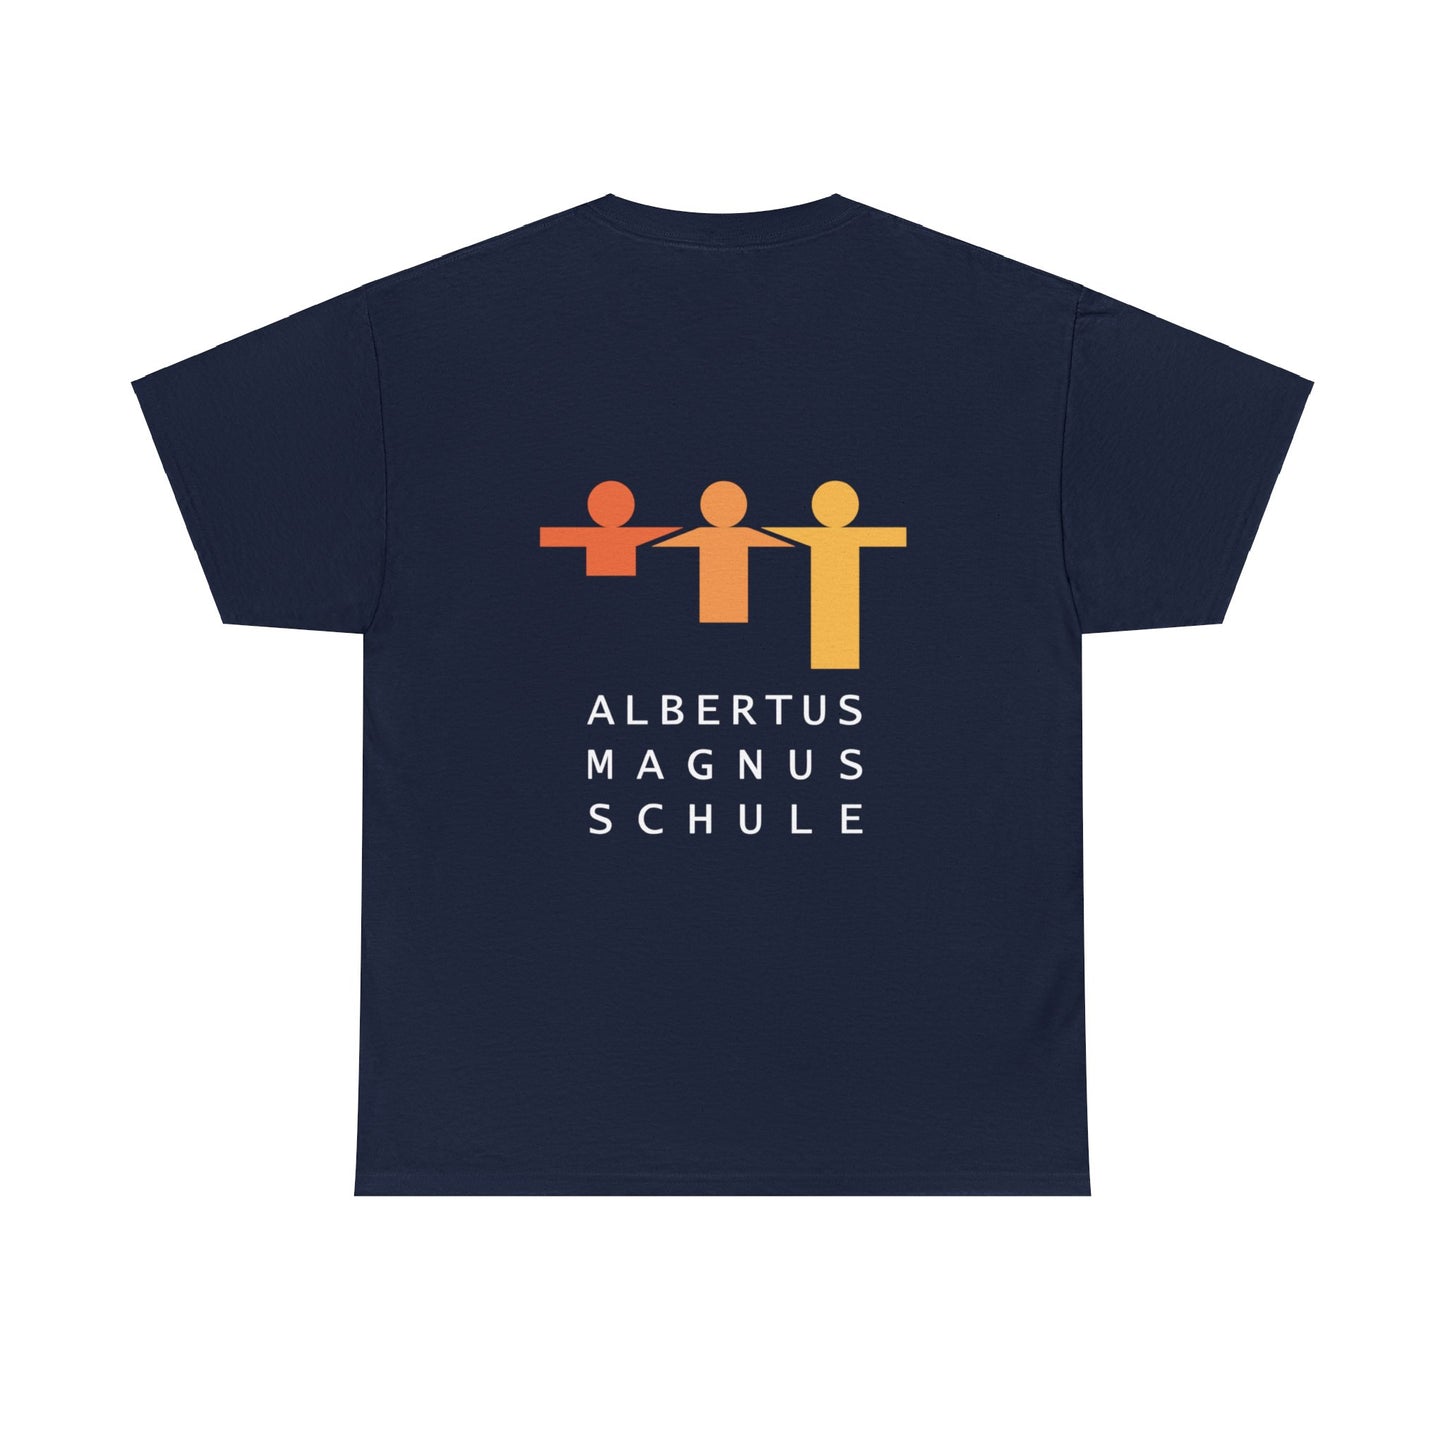 Albertus Magnus Schule T-Shirt